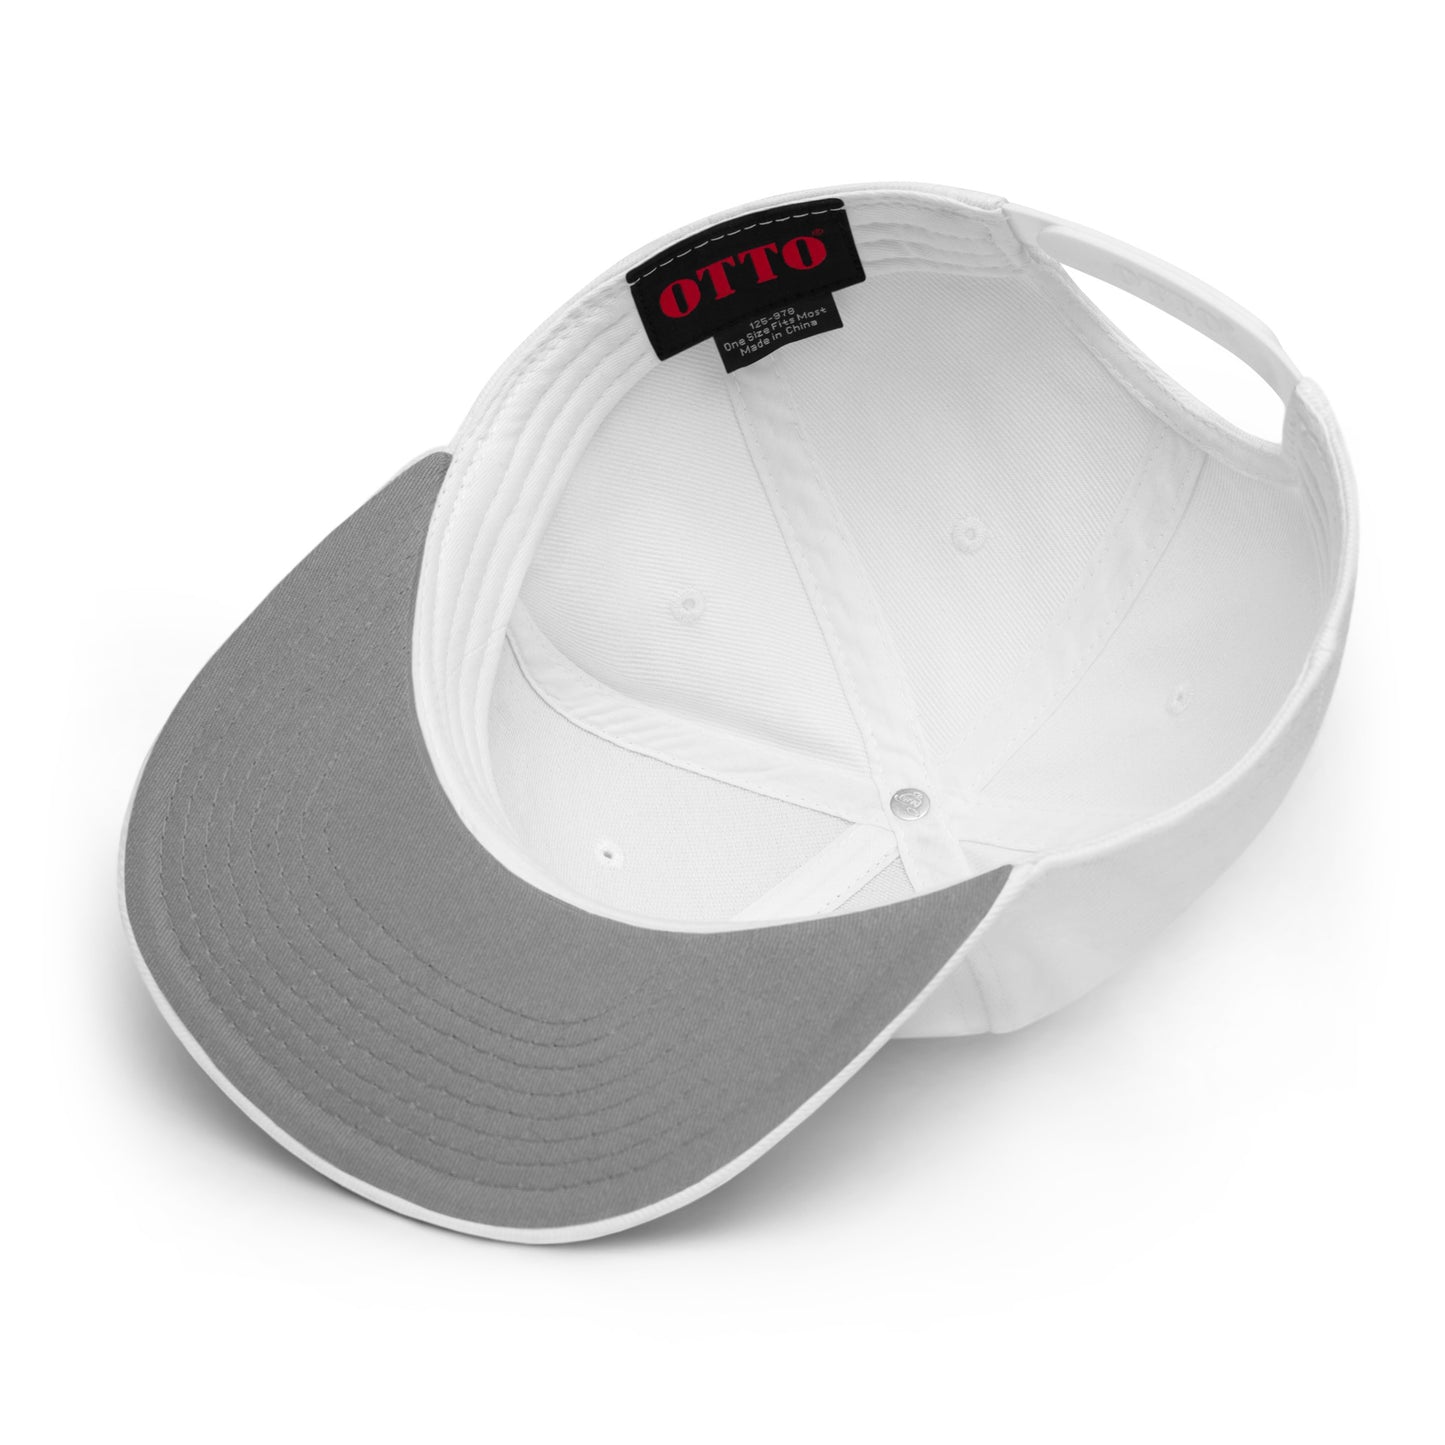 Unisex Warsaken® Hat : Snapback: Logo : White